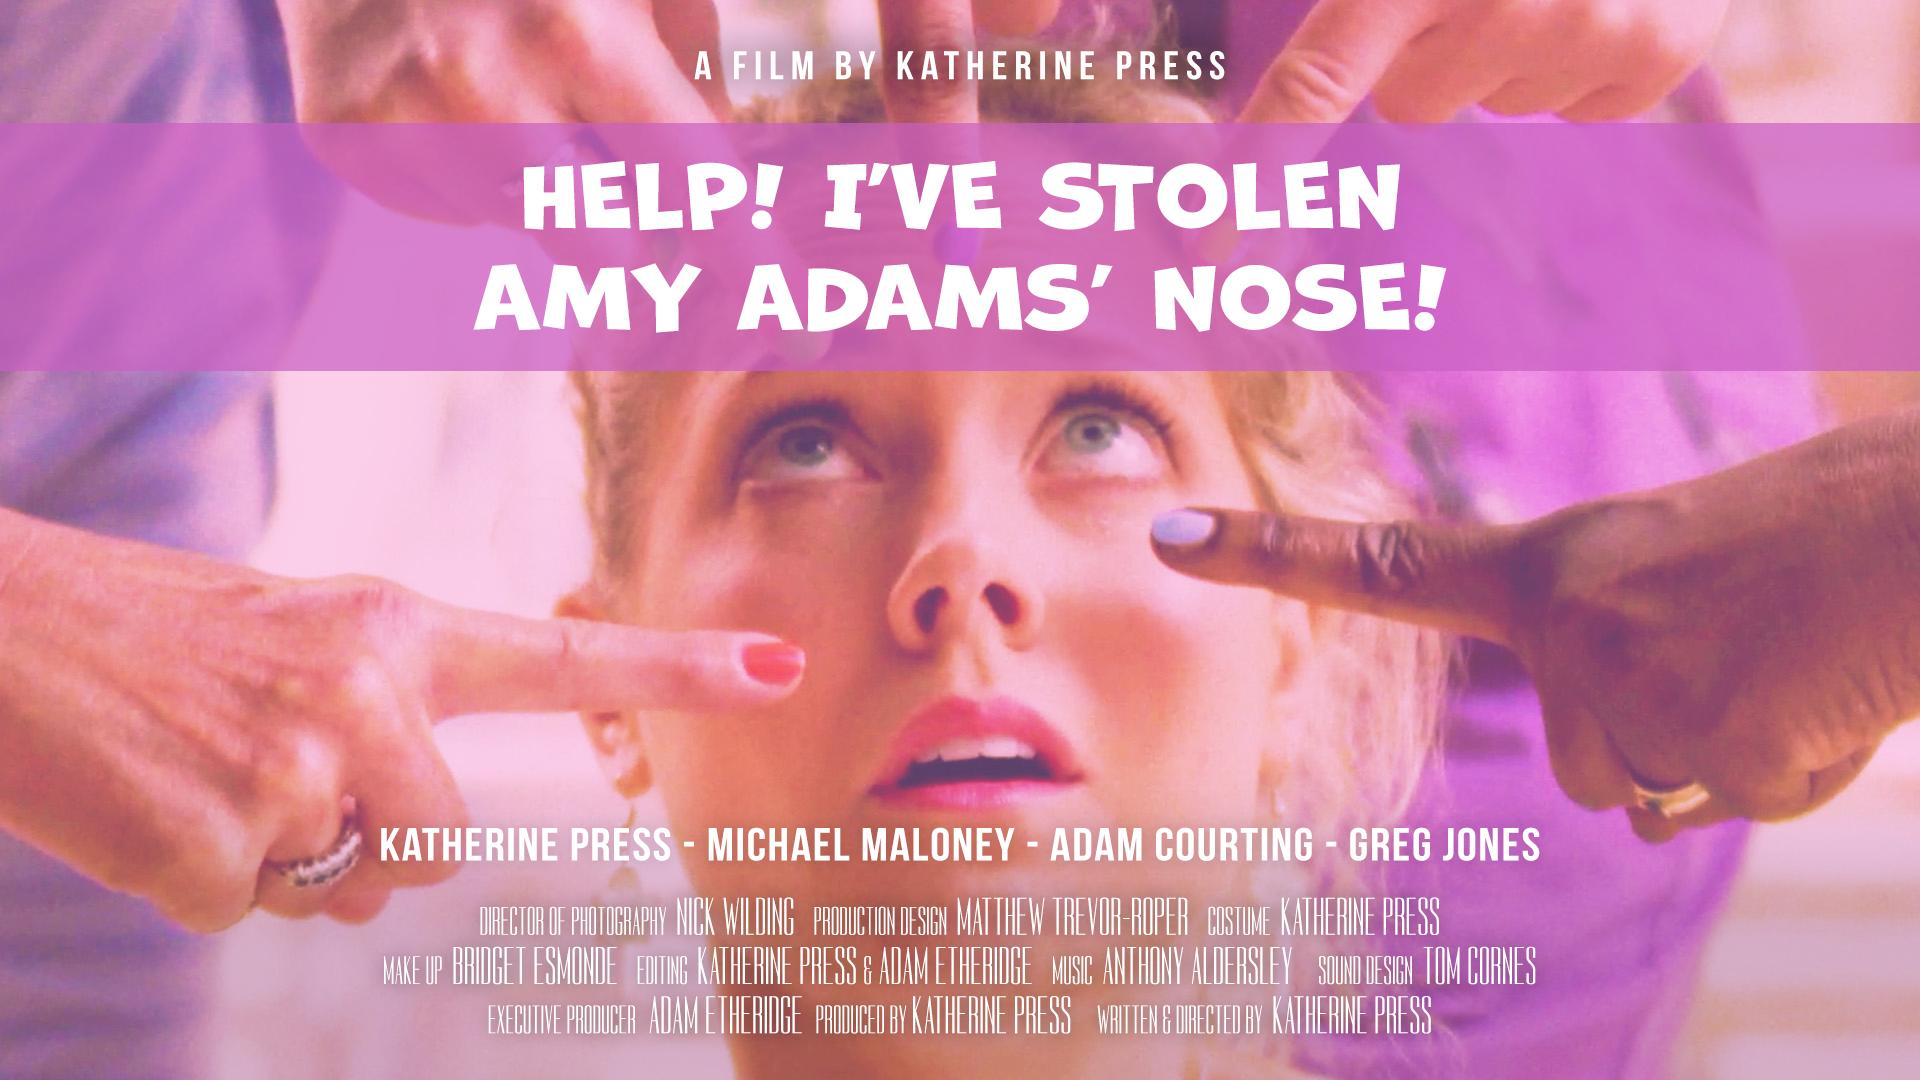 Help! I've Stolen Amy Adams' Nose!